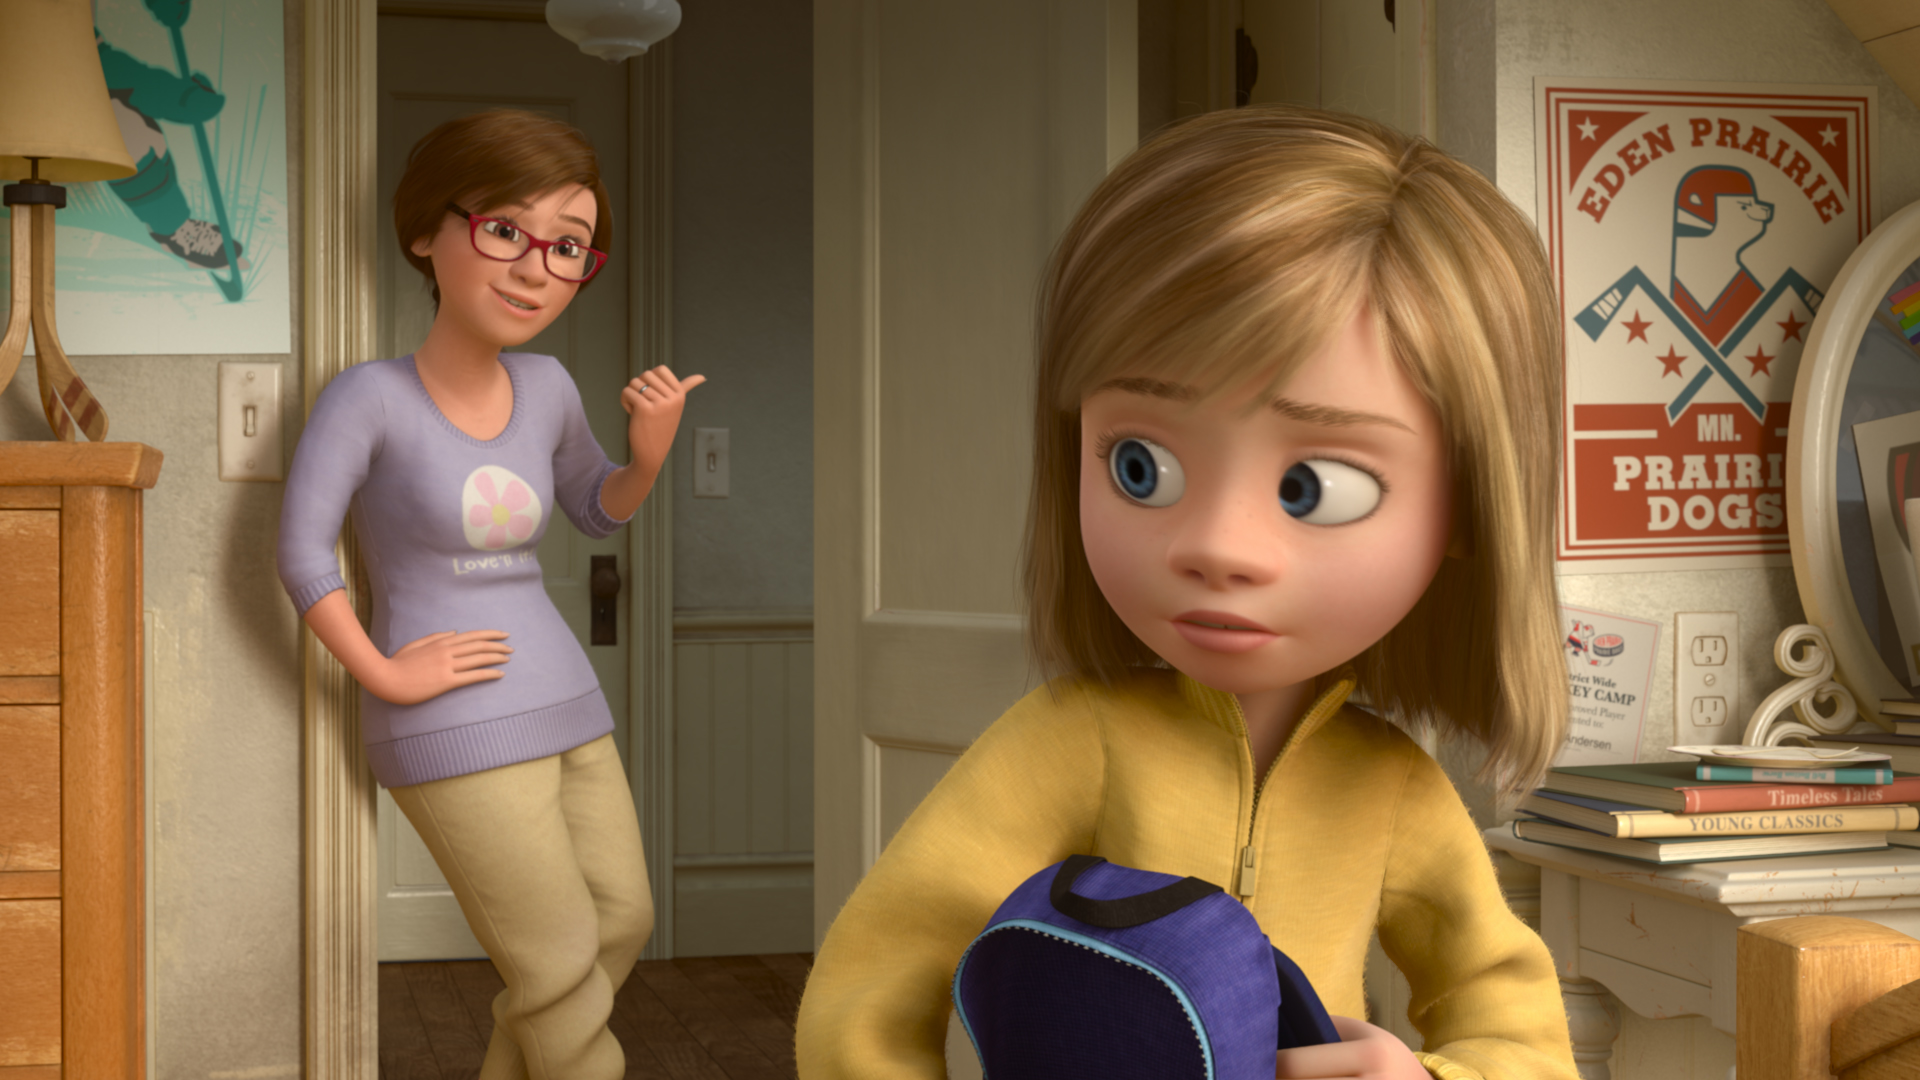 Disney lança vídeo com personagens de Divertida Mente